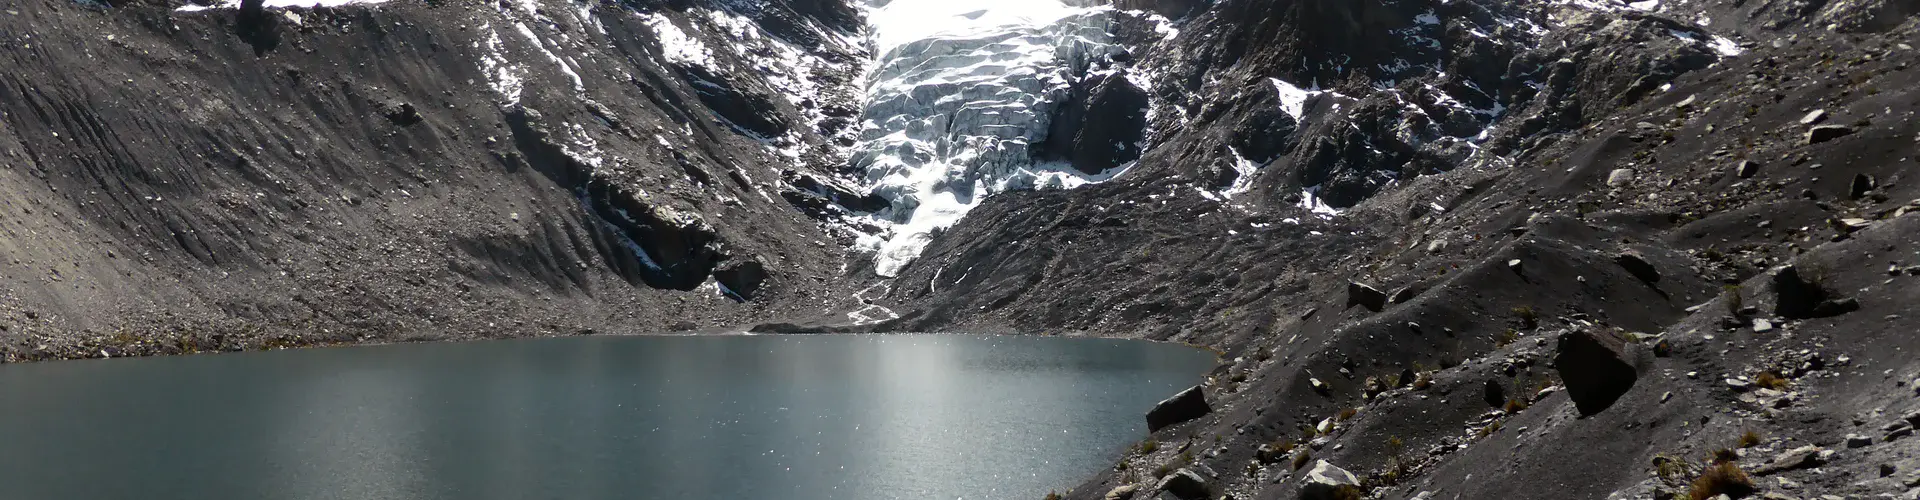 Glacier and glacier lake in the Bolivian Andes (Credit: Simon Cook)